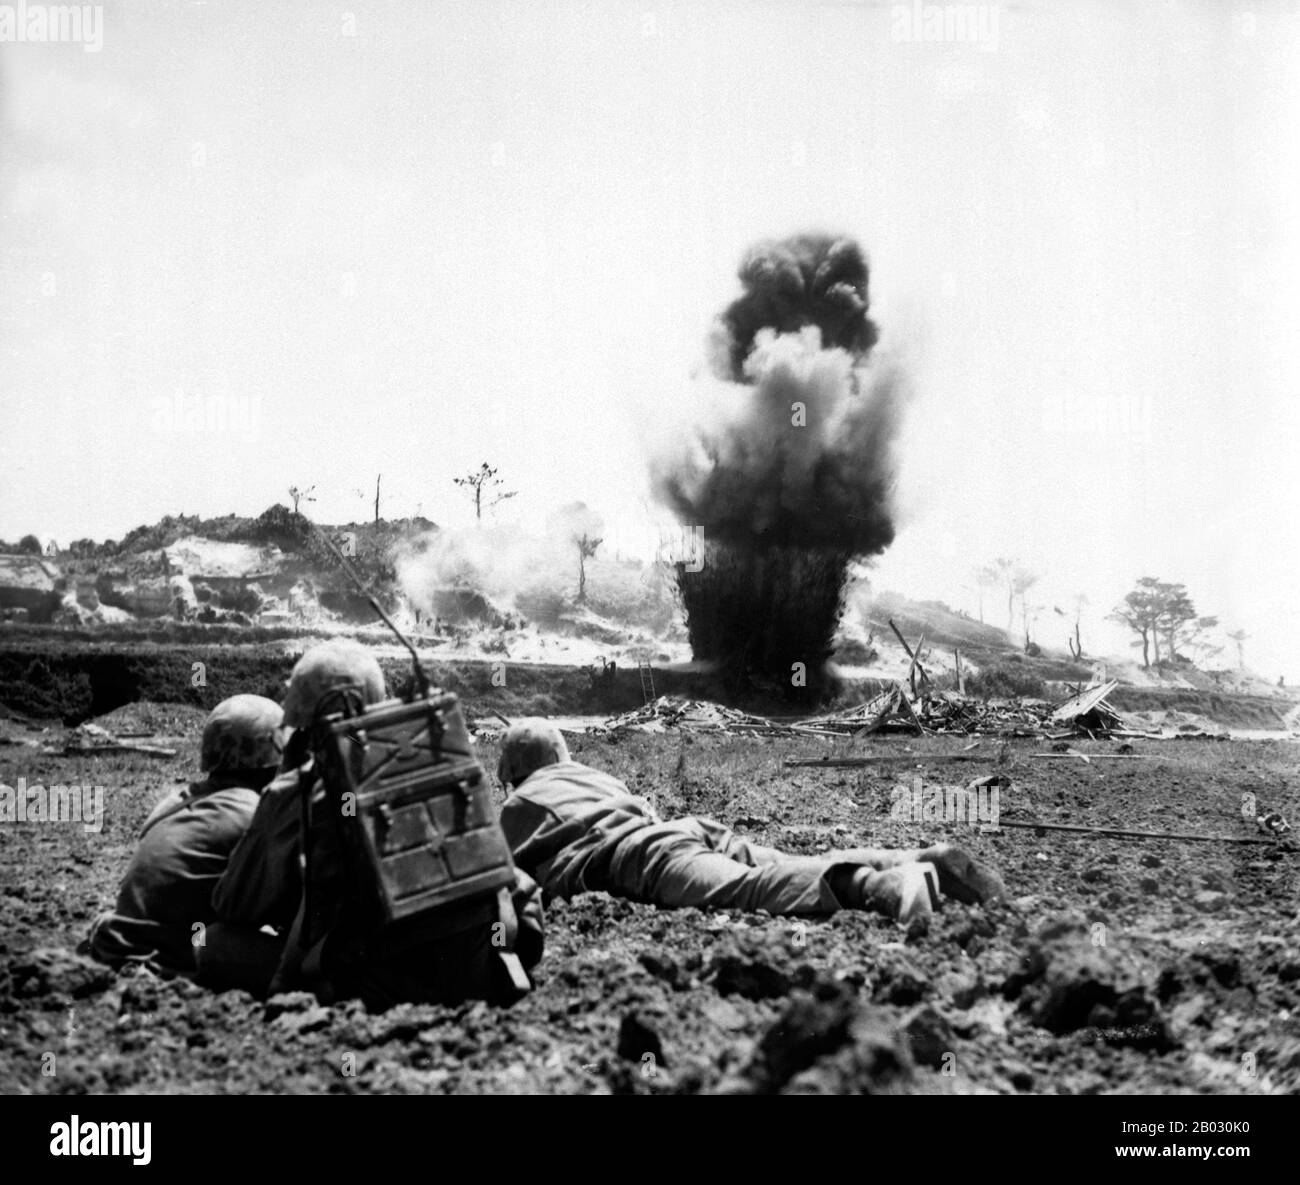 La battaglia di Okinawa, nome in codice Operazione Iceberg, fu una serie di battaglie combattute nelle isole Ryukyu, centrate sull'isola di Okinawa, e includeva il più grande assalto anfibio nella guerra del Pacifico. La battaglia lunga 82 giorni durò dal 1 aprile al 22 giugno 1945. La battaglia di Okinawa è stata notevole per la ferocia dei combattimenti, l'intensità degli attacchi kamikaze da parte dei difensori giapponesi, e il gran numero di navi alleate e veicoli armati che assalivano l'isola. La battaglia fu una delle più sanguinose del Pacifico. Foto Stock